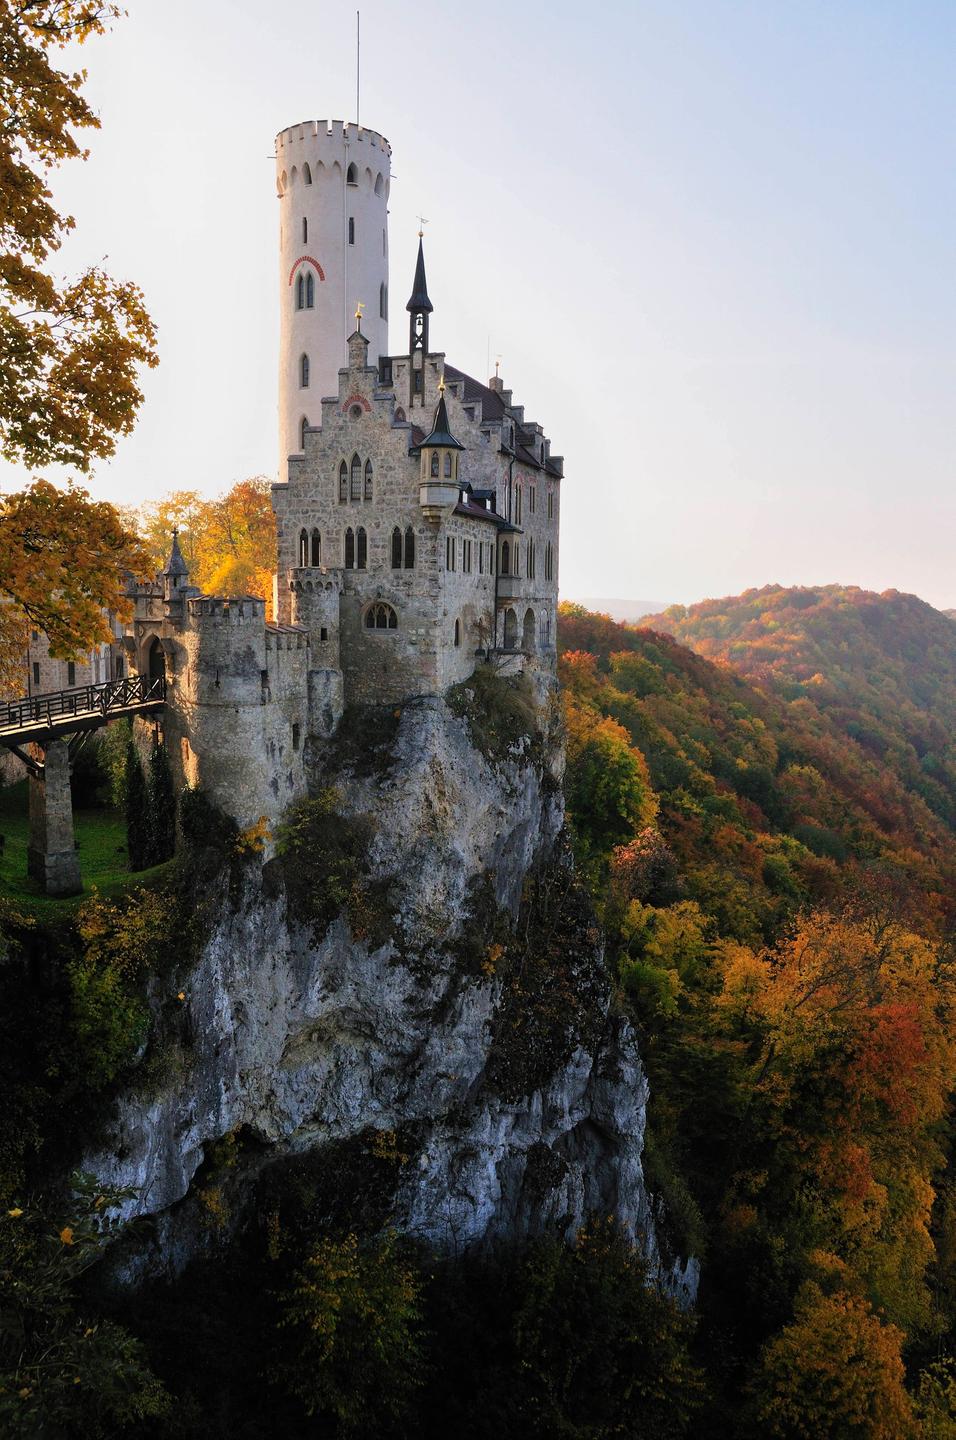 Das Romantik-Schloss Lichtenstein auf der Schwäbischen Alb. Ein Schloss mit Turm und Zinnen auf einem Felsen. Im Hintergrund sind die dicht bewachsenen Hügel der Schwäbischen Alb zu sehen.